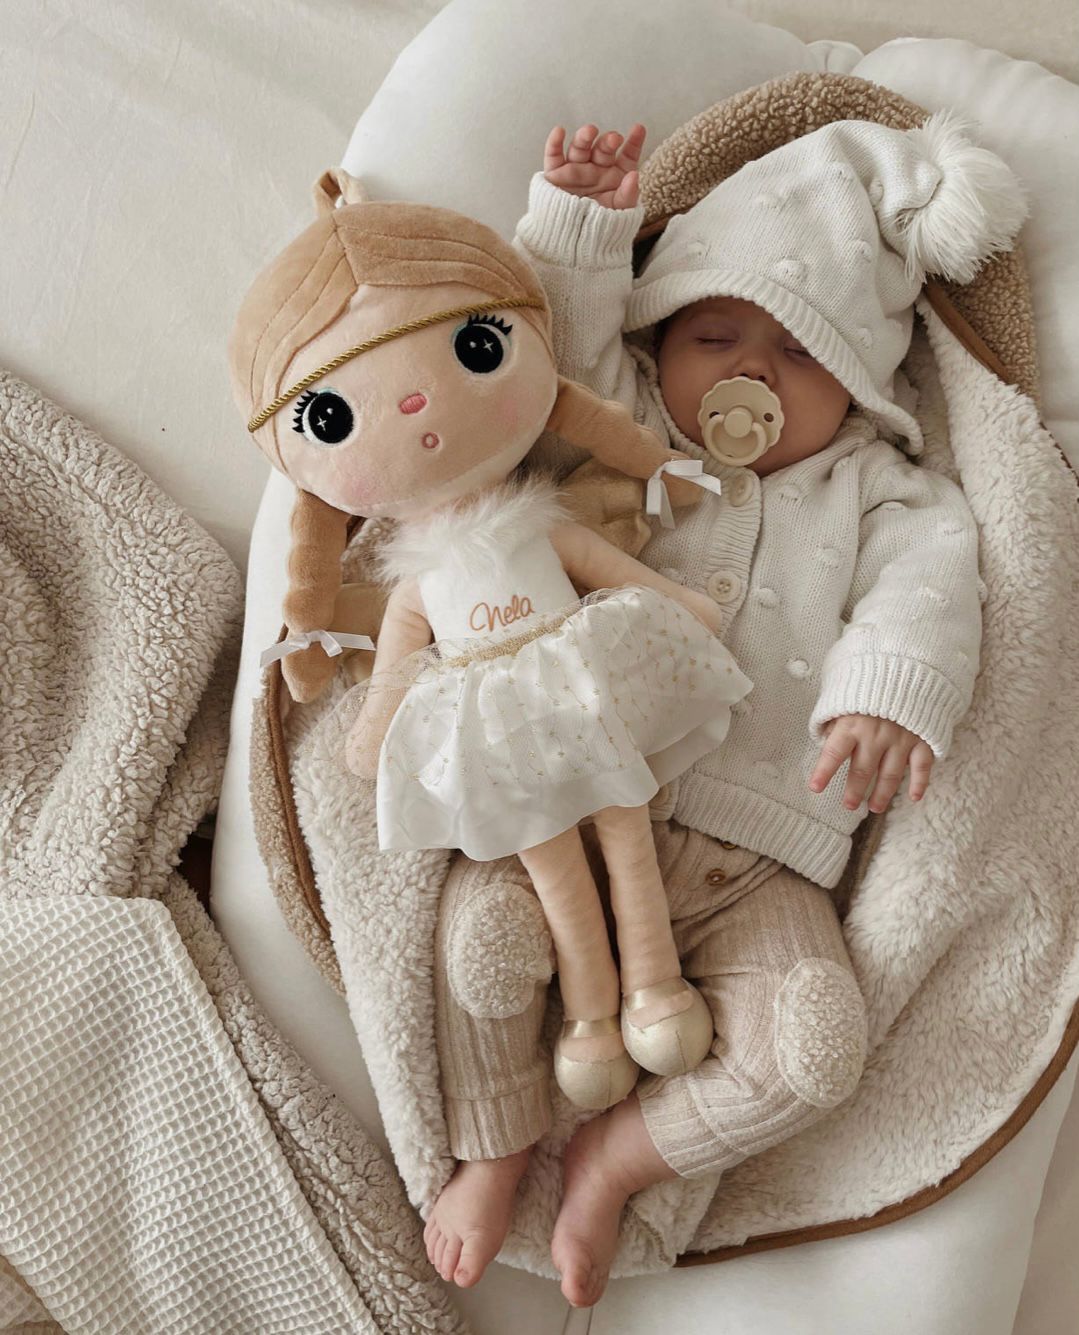 stoffpuppe mit namen geschenk babyboom sendoro shop personalisiert engel angel white doll weiss